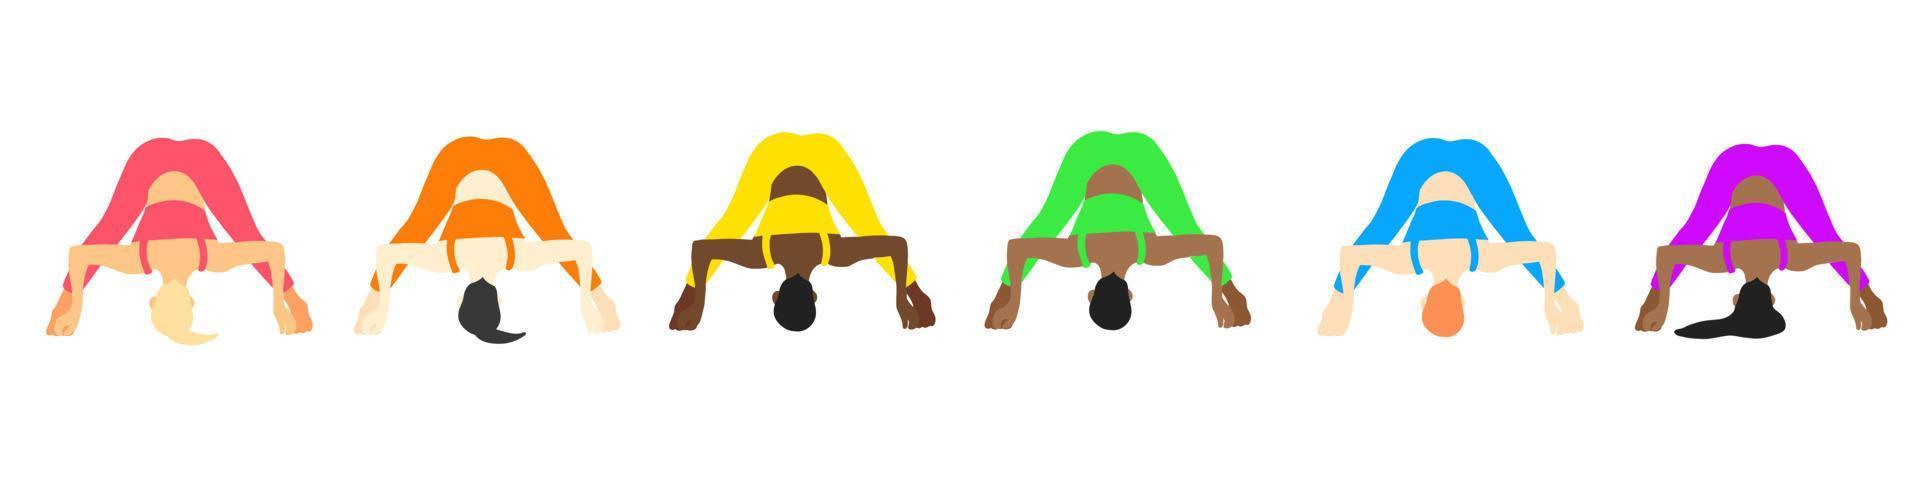 coleção de poses de ioga. europeu, africano, asiático. menina mulher feminina. ilustração vetorial em estilo cartoon plana isolado no fundo branco. vetor